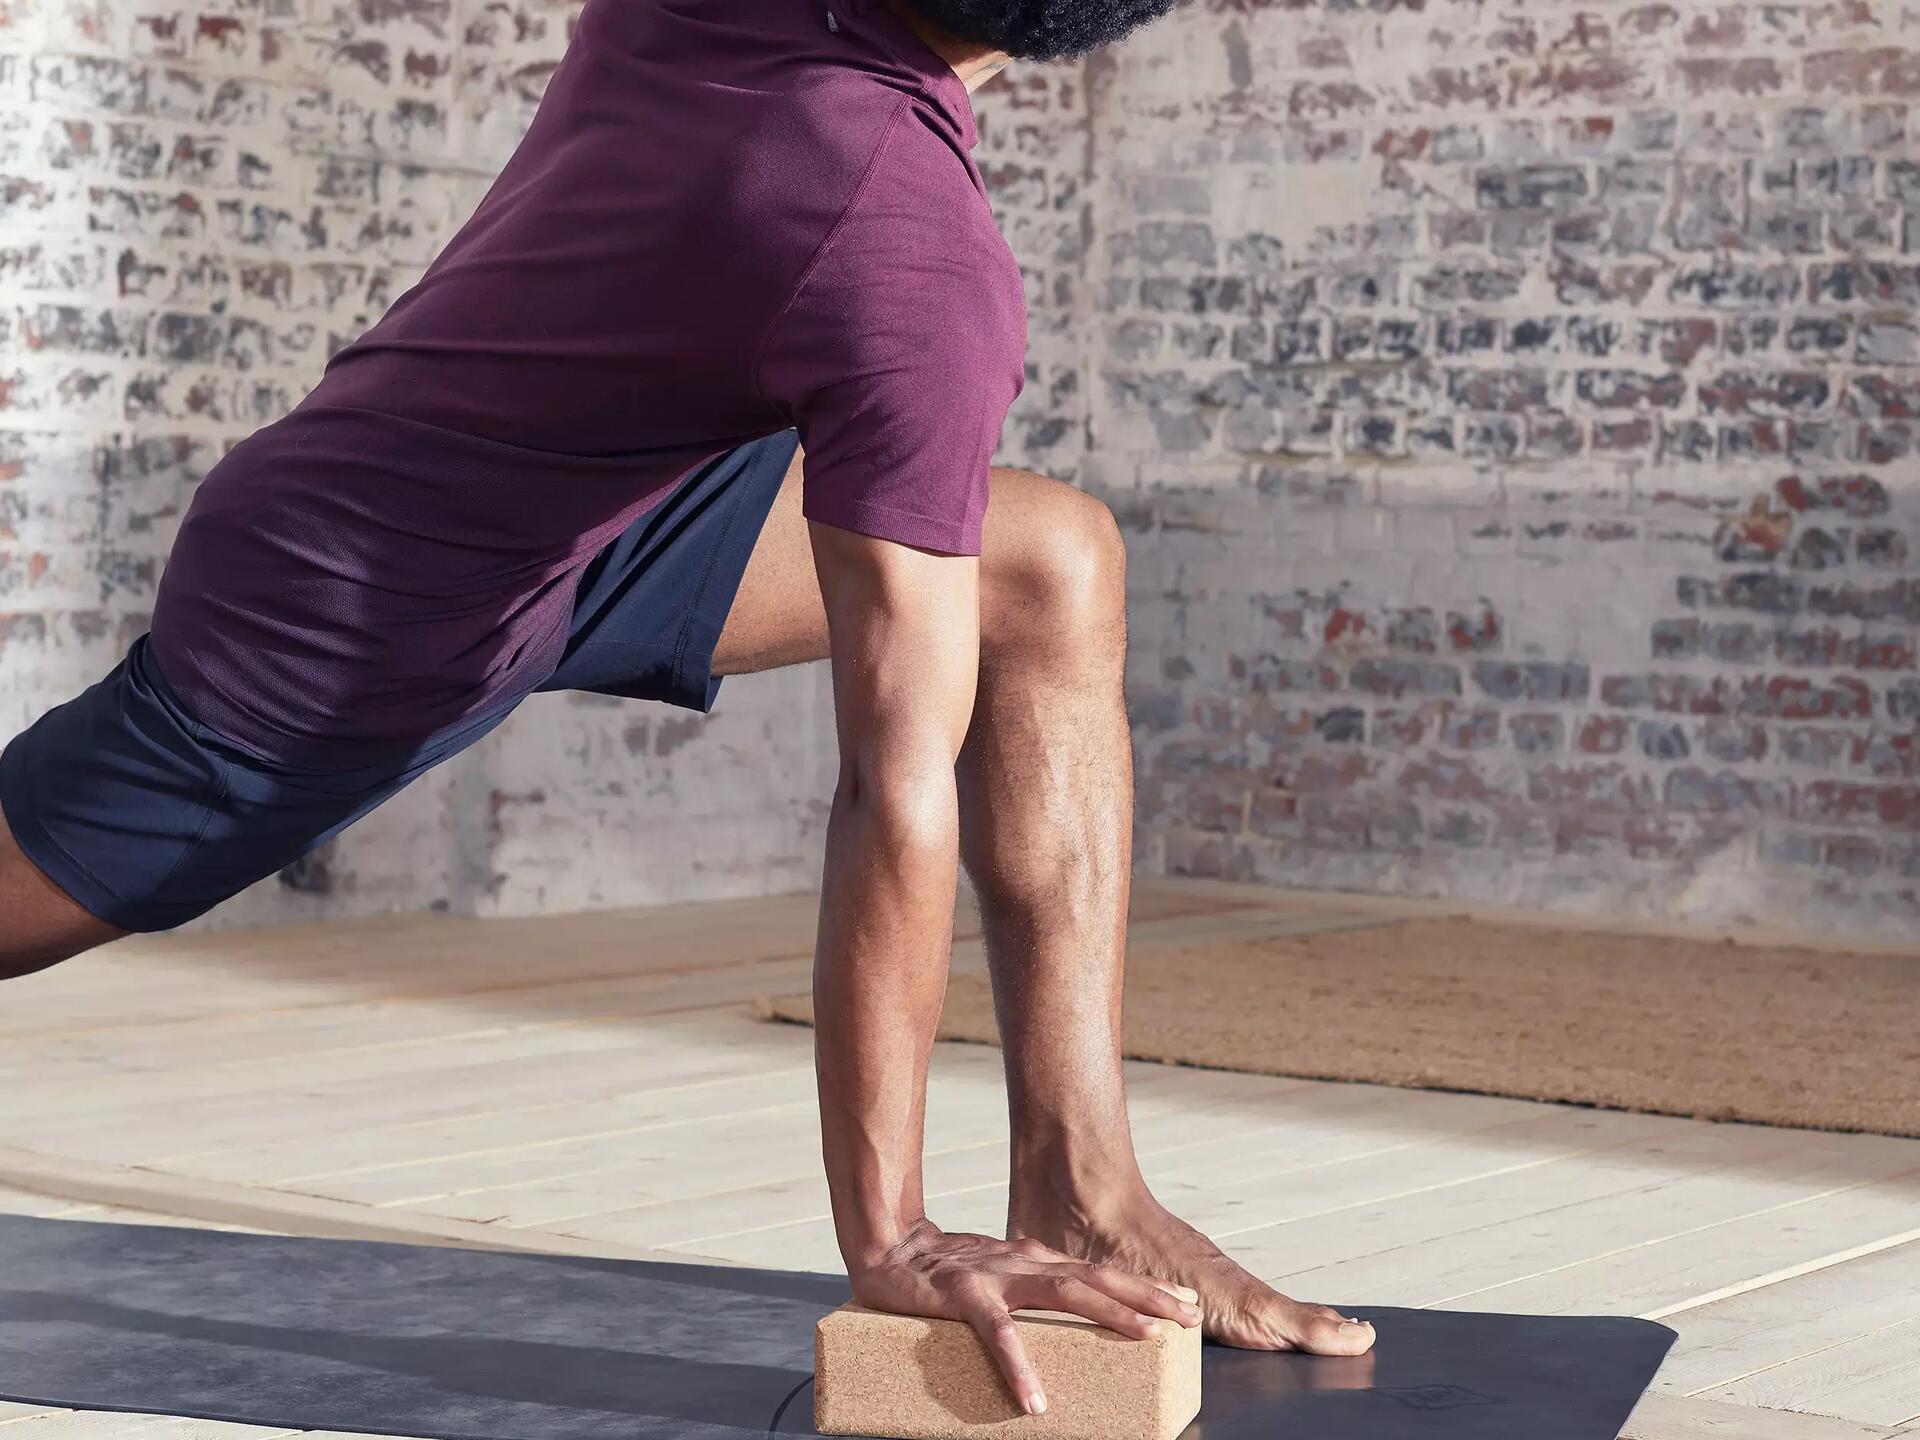 Homme s'appuyant sur un bloc de liège pour maintenir une pose de yoga